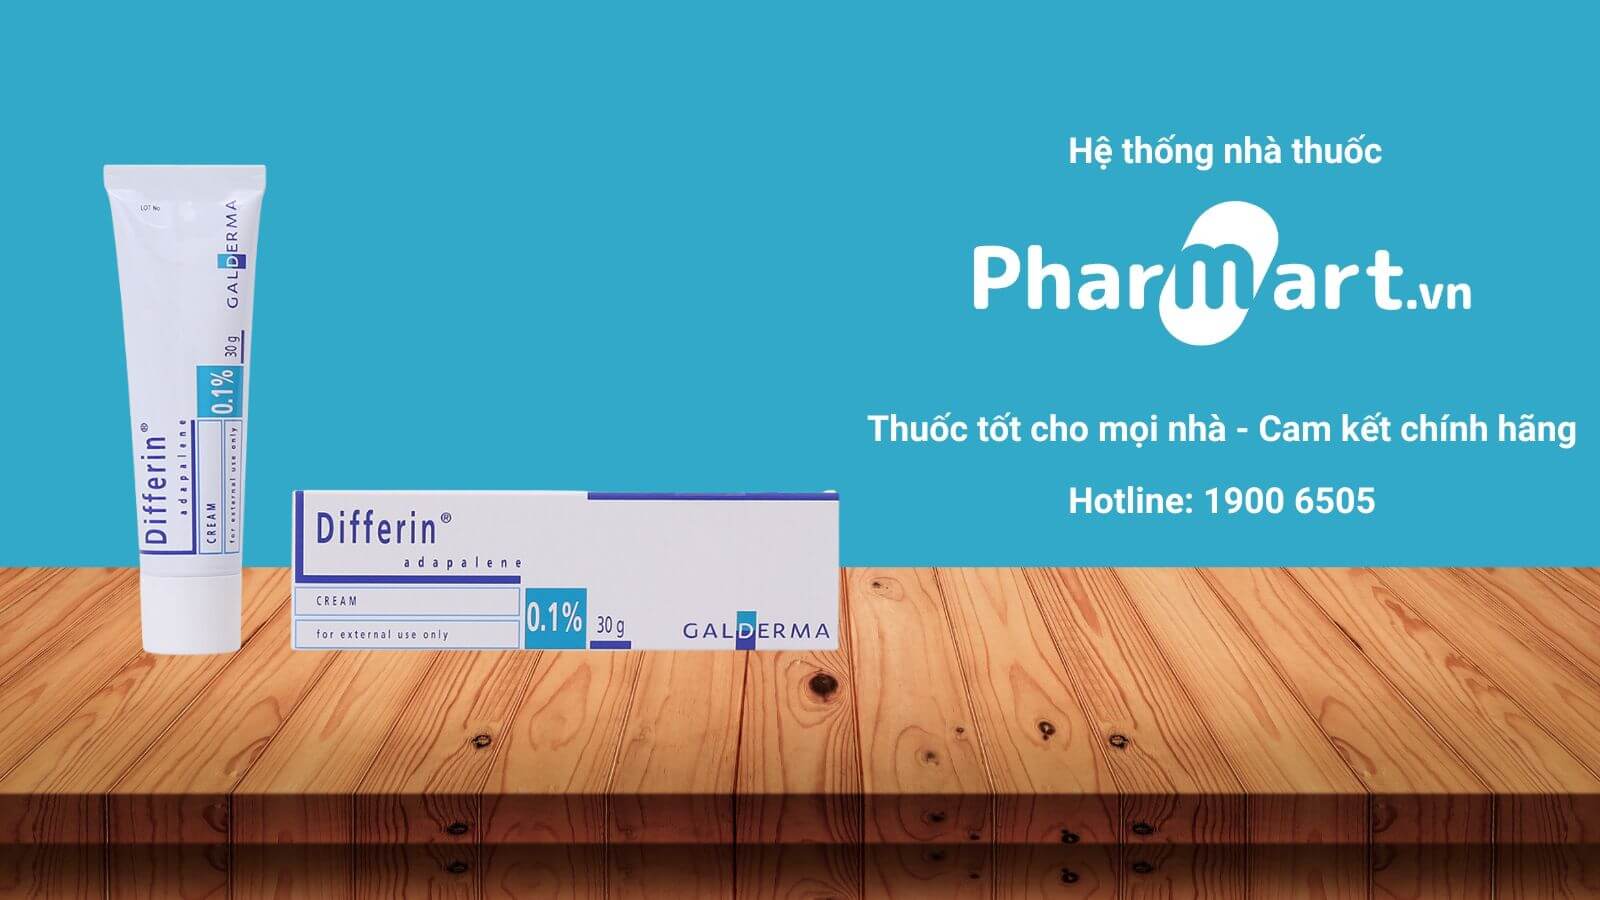 Pharmart.vn - Địa chỉ mua hàng uy tín, chất lượng